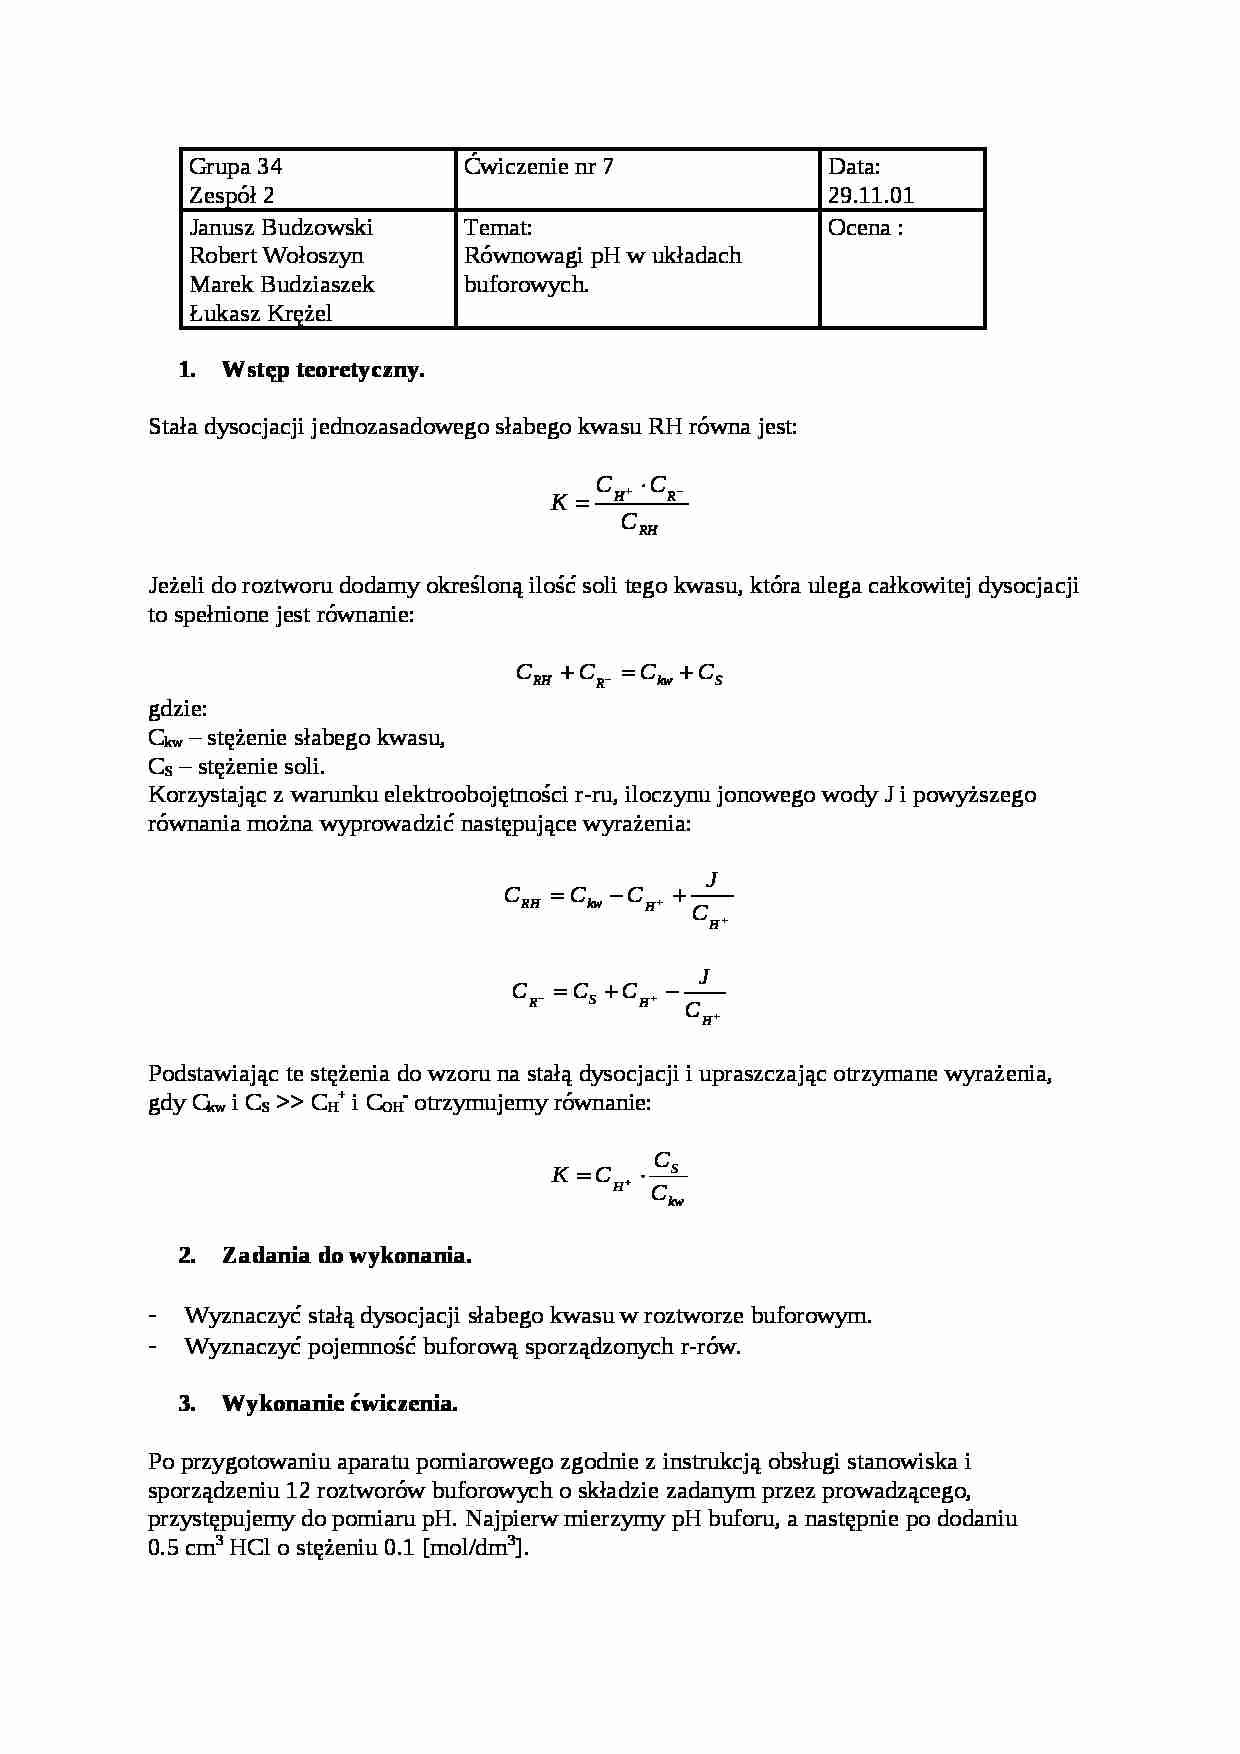 Równowagi pH w układach buforowych - omówienie - strona 1